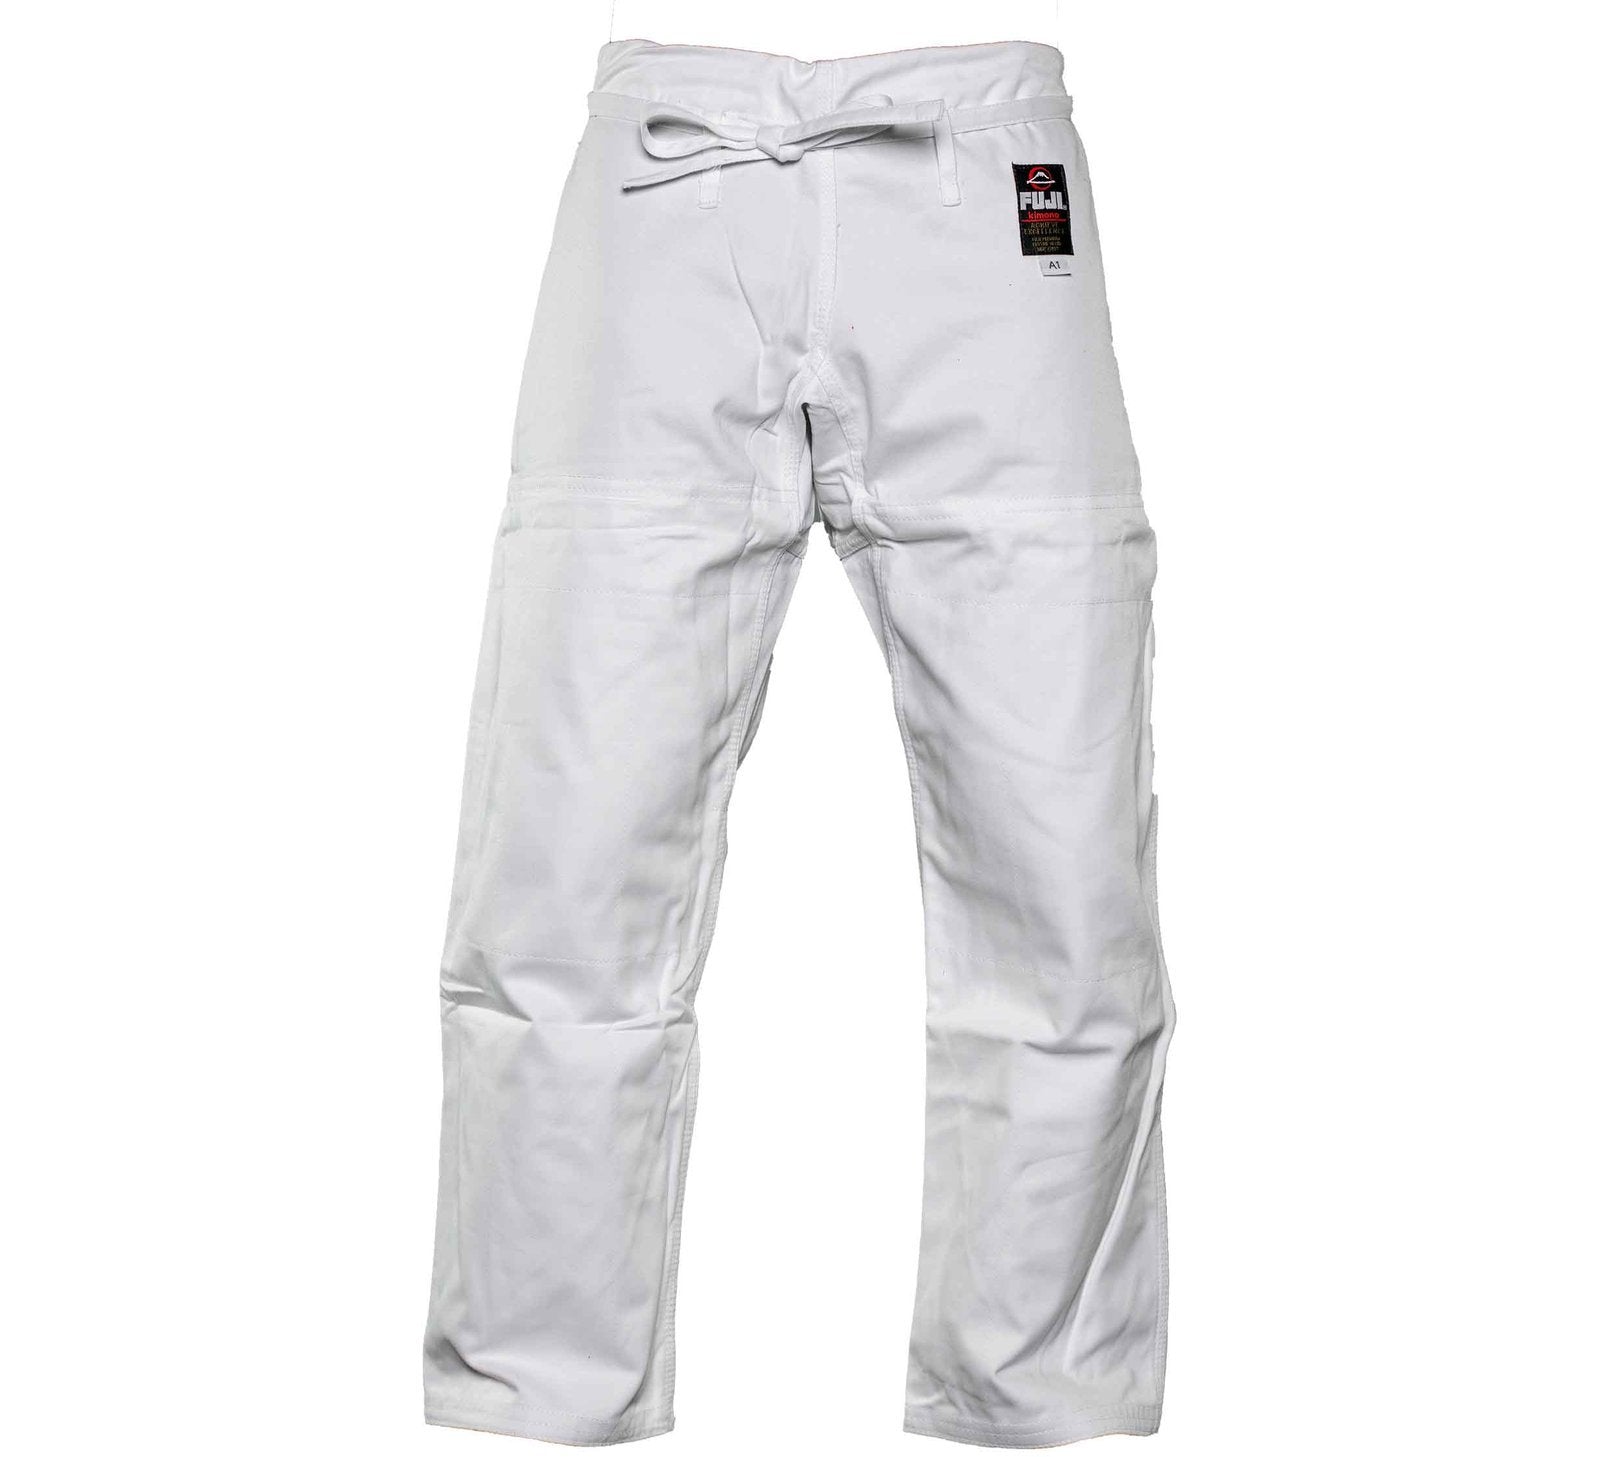 セール高品質FUJI 21AW cotton slacks パンツ